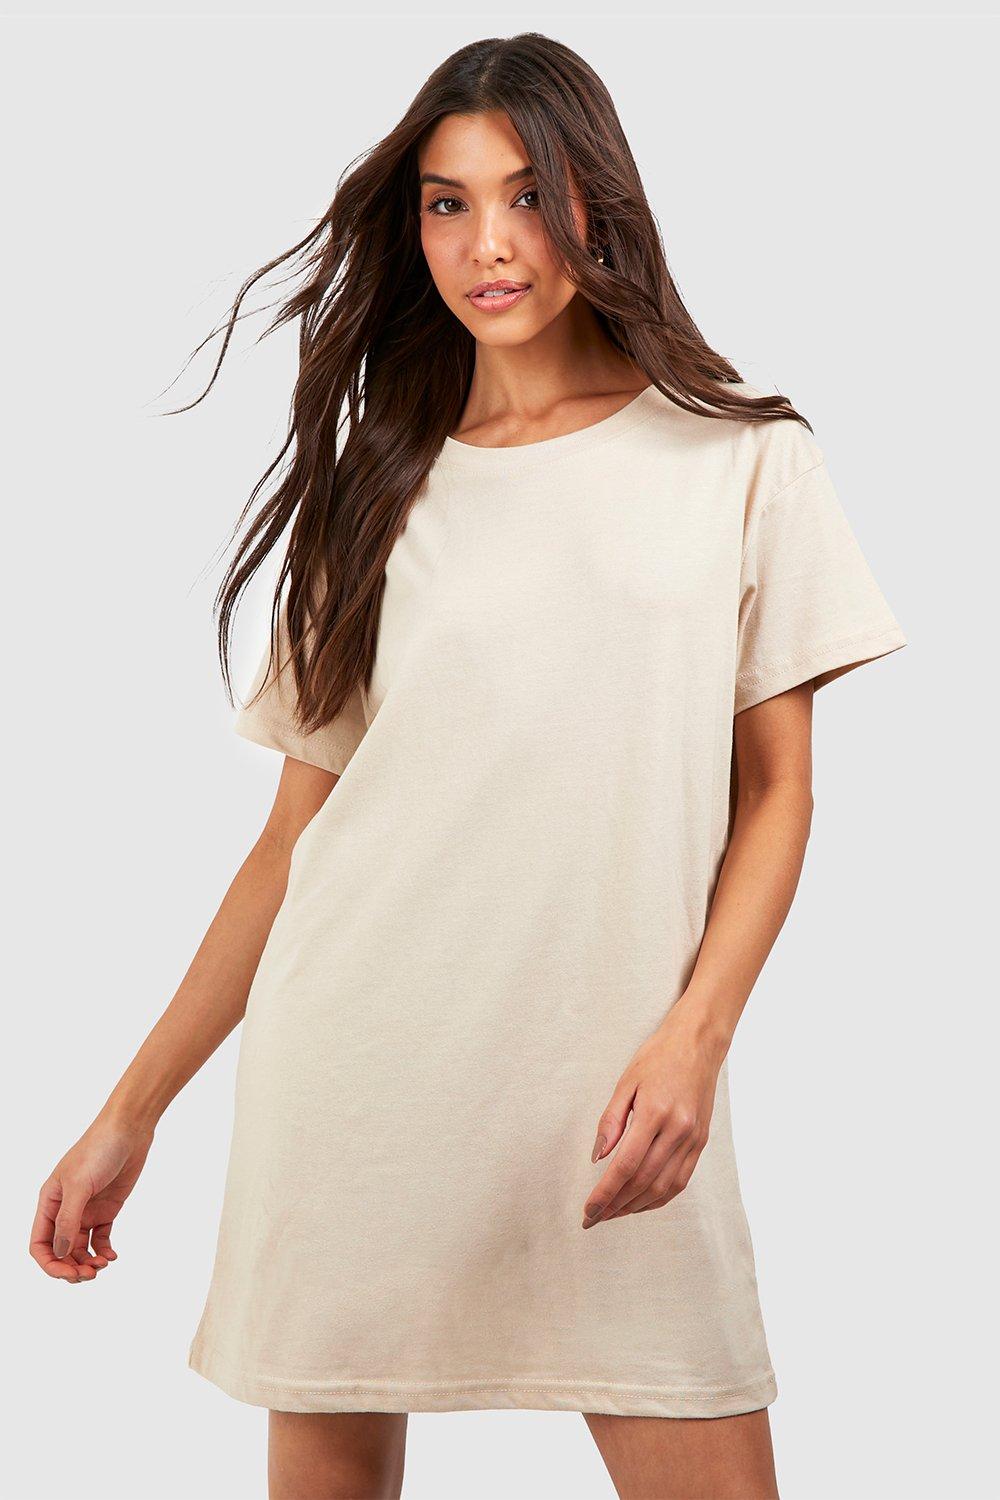 Image of Vestito T-shirt oversize Basic, Sabbia